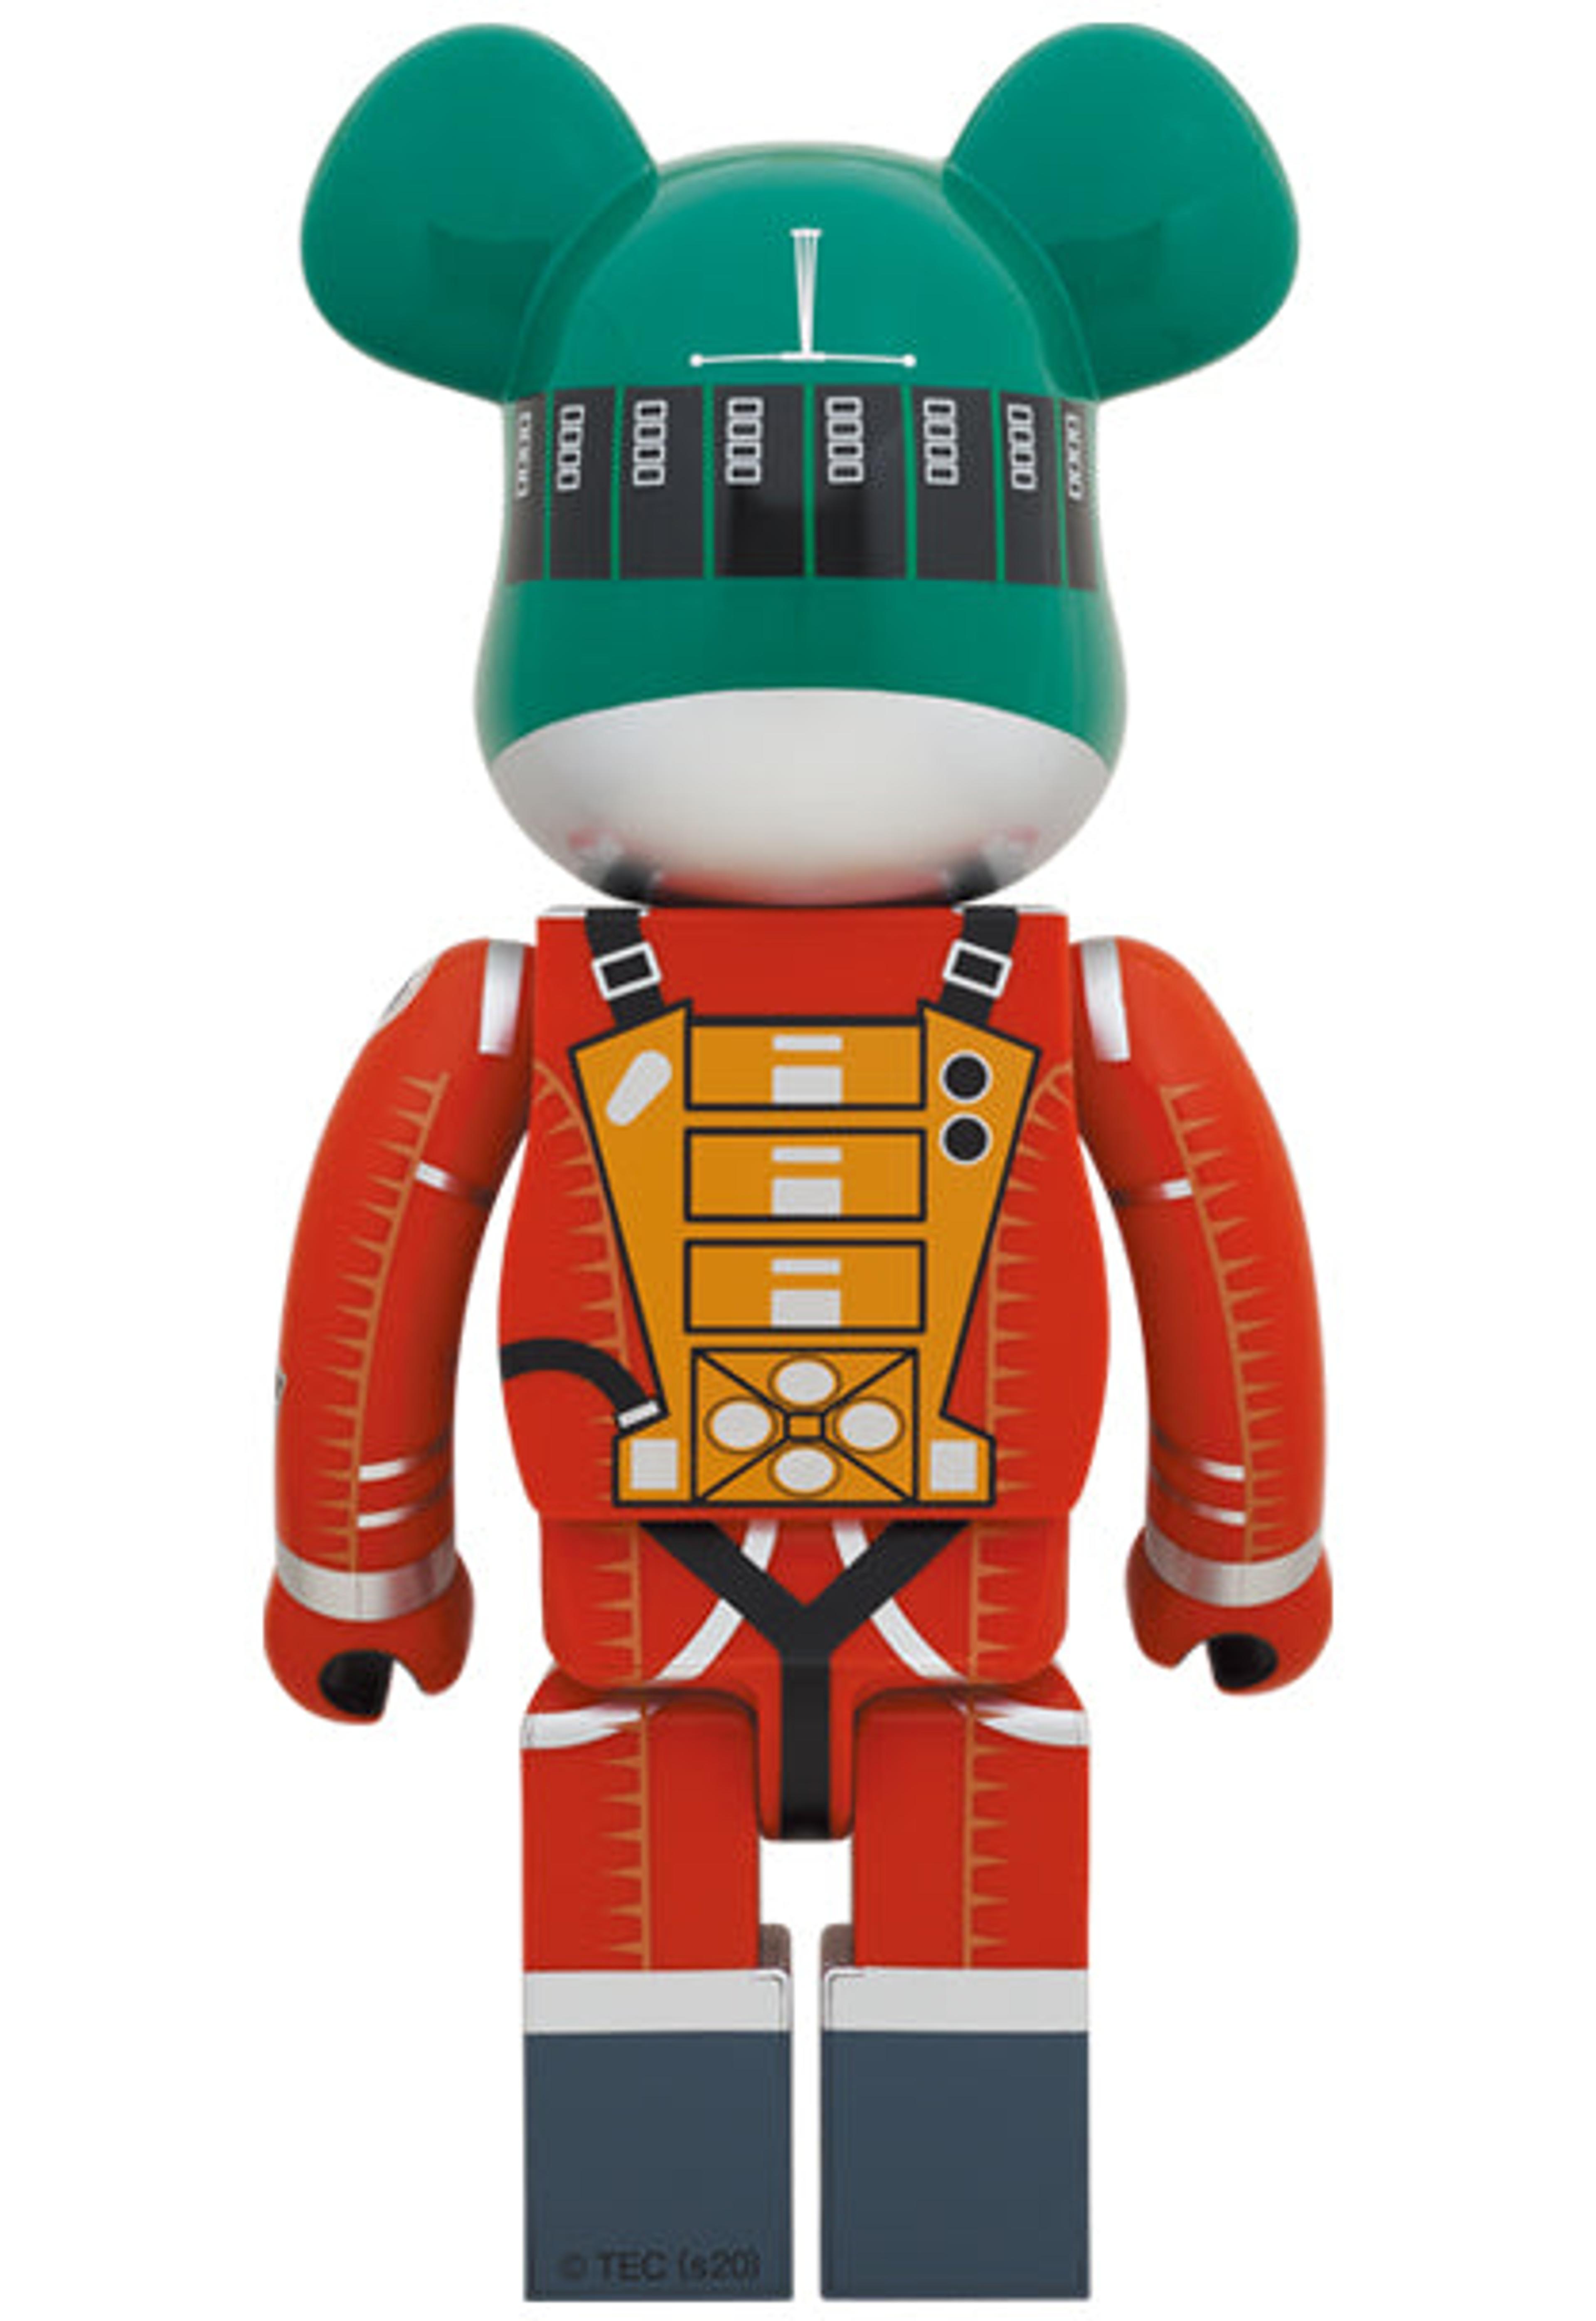 Alternate View 1 of BE@RBRICK Space Suit Green Helmet & Orange Suit Ver. 1000％